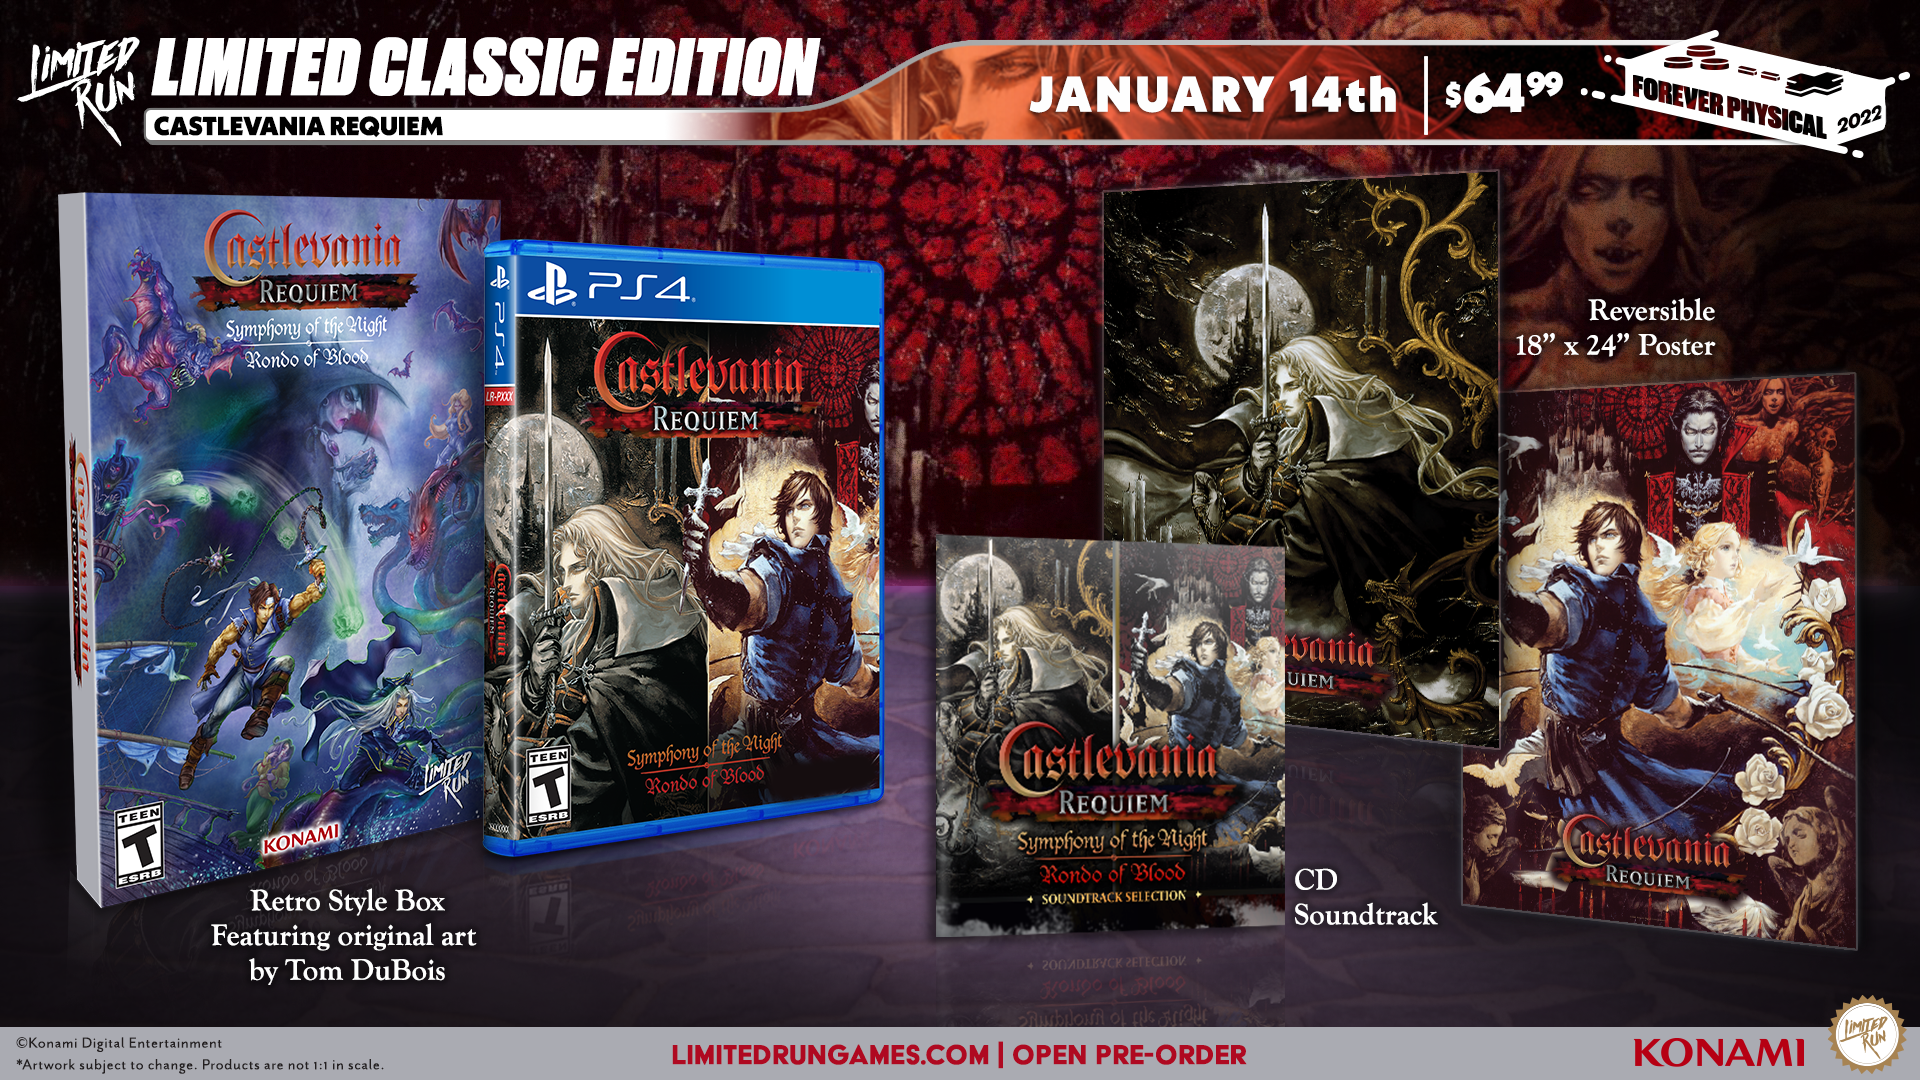 Castlevania Requiem bekommte eine physische Version auf der PlayStation 4 2 Castlevania Requiem bekommt eine physische Version auf der PlayStation 4